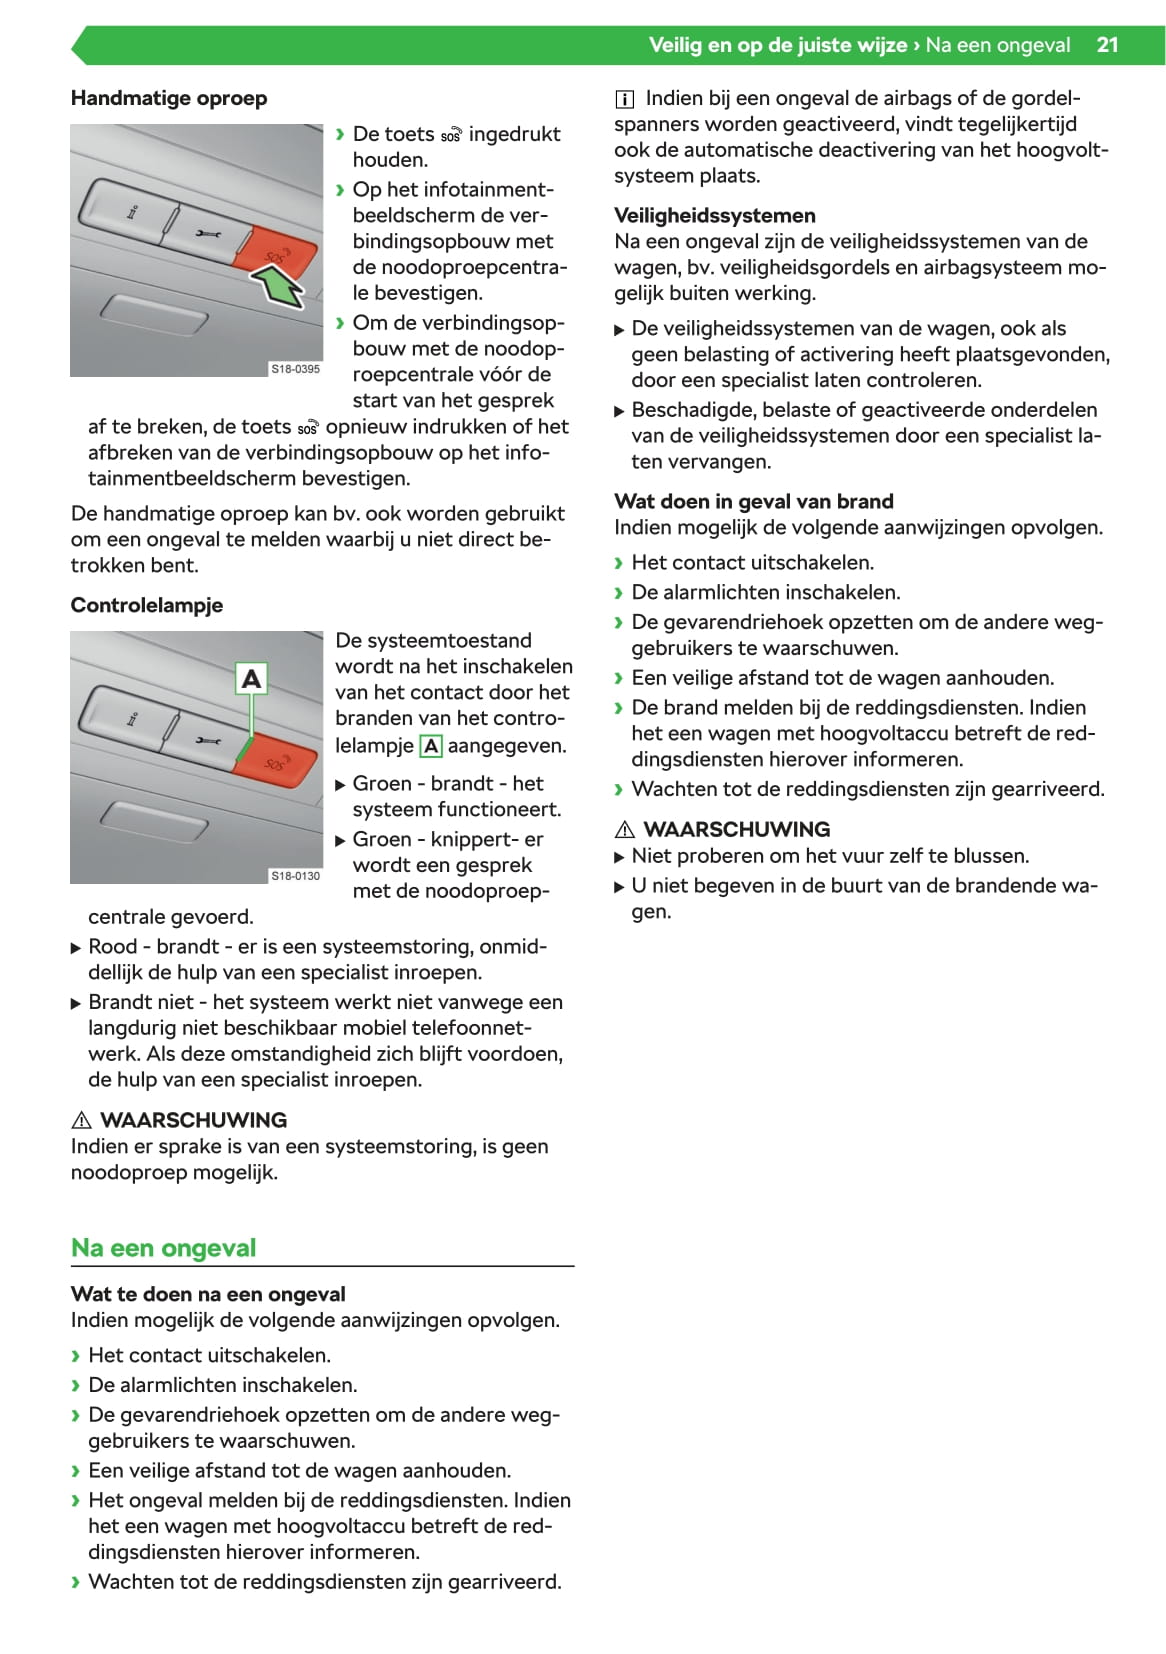 2019-2020 Skoda Superb iV Owner's Manual | Dutch